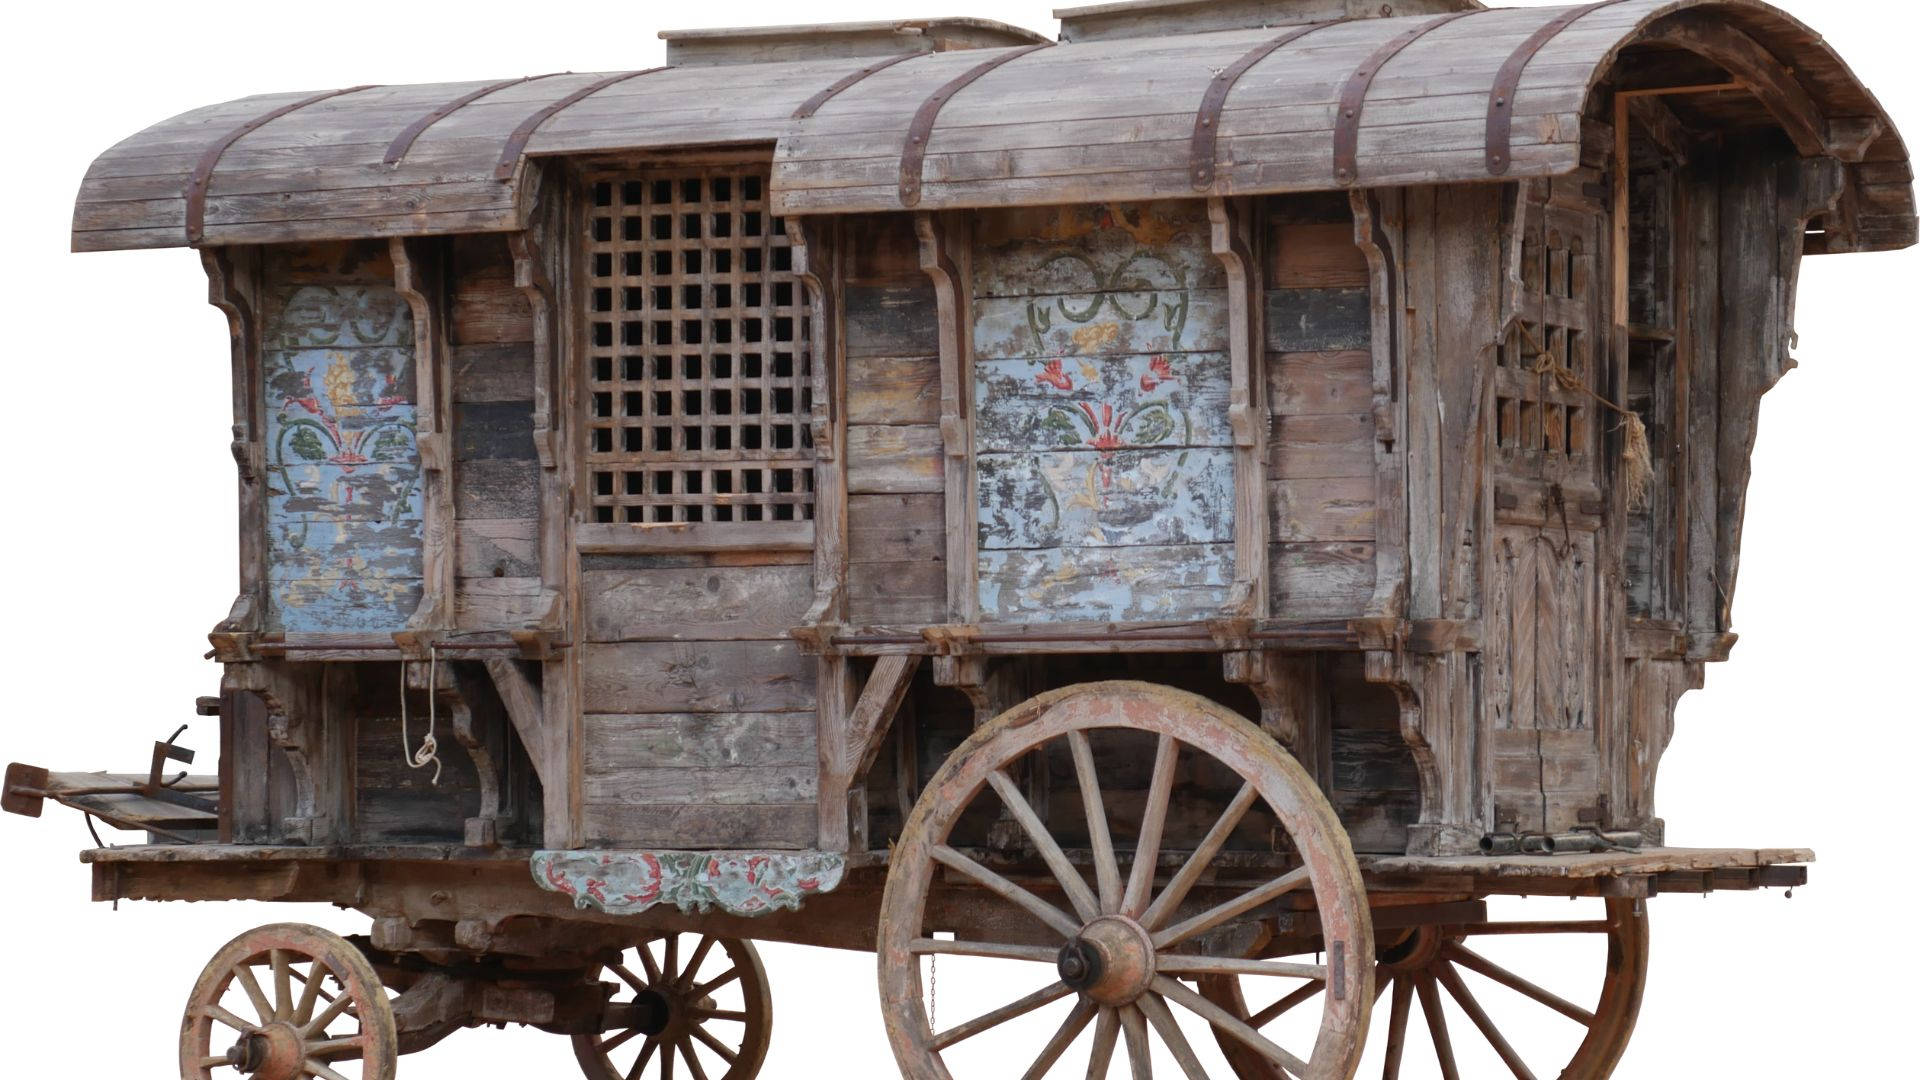 A Medieval Caravan Picture